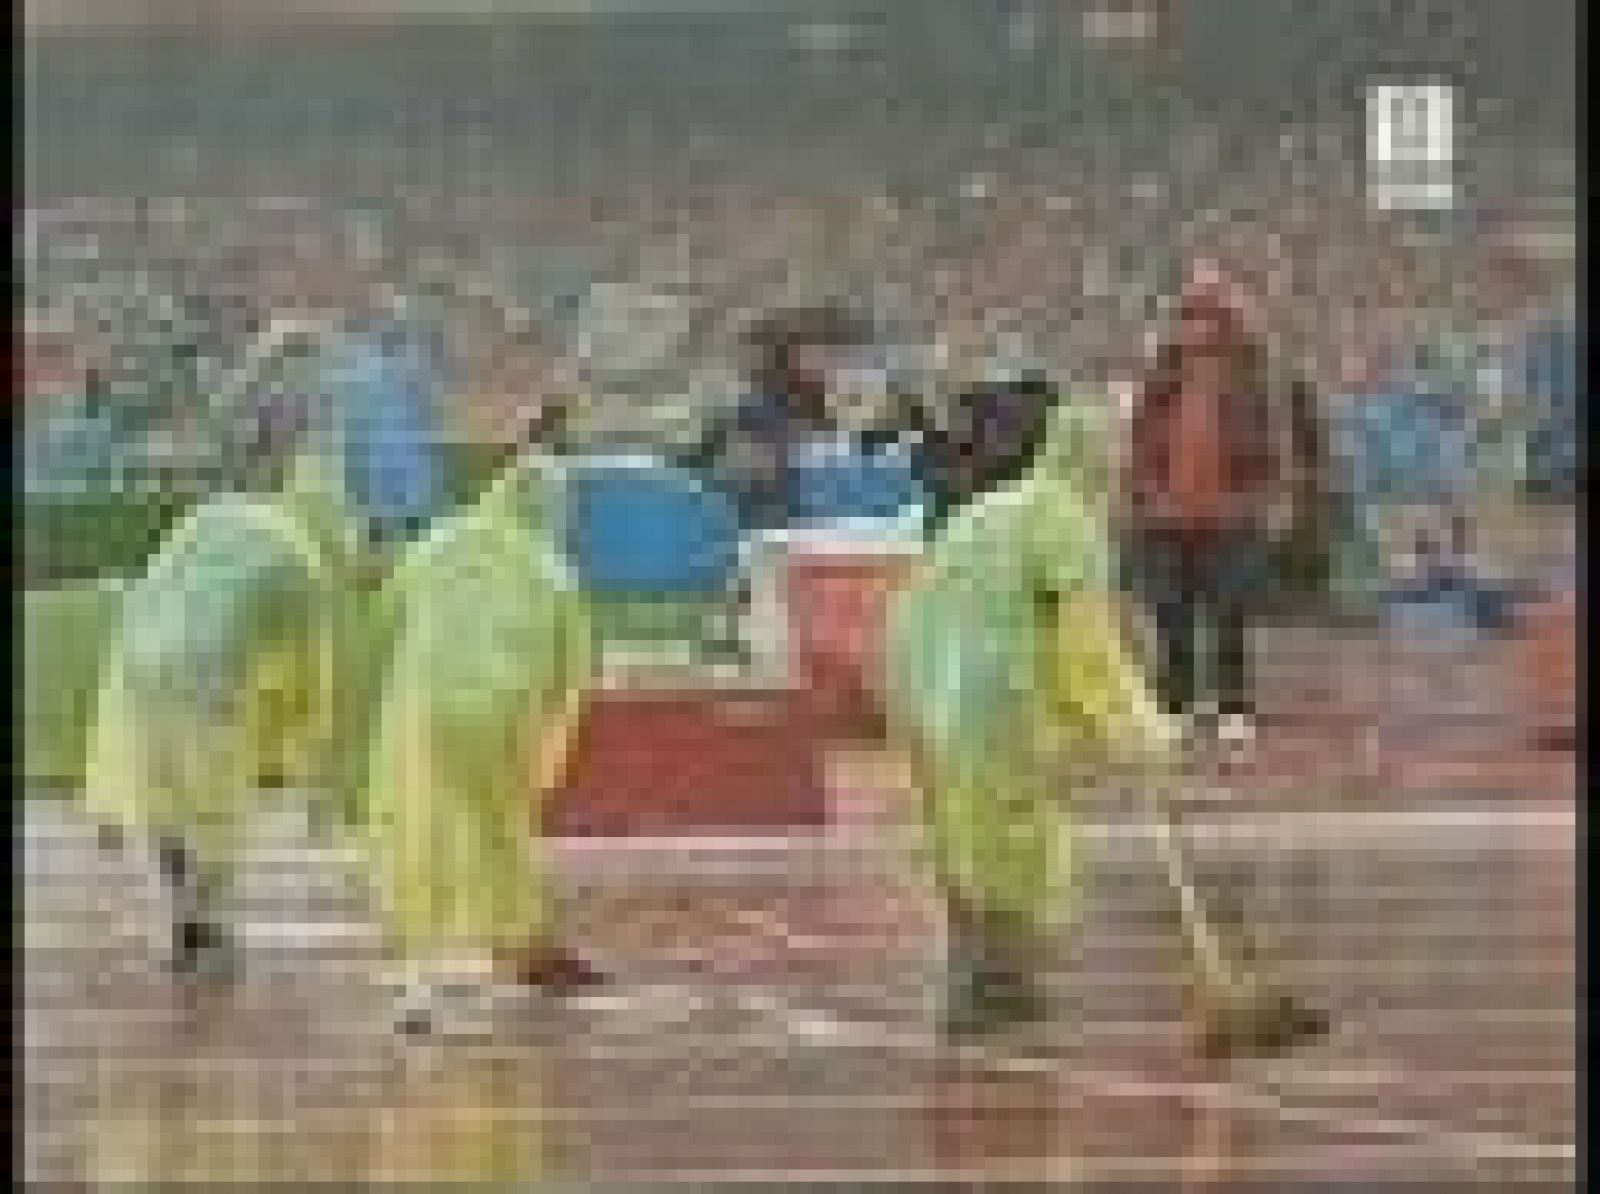  La intensa lluvía es la protagonista en la 13ª jornada de los juegos olímpicos.